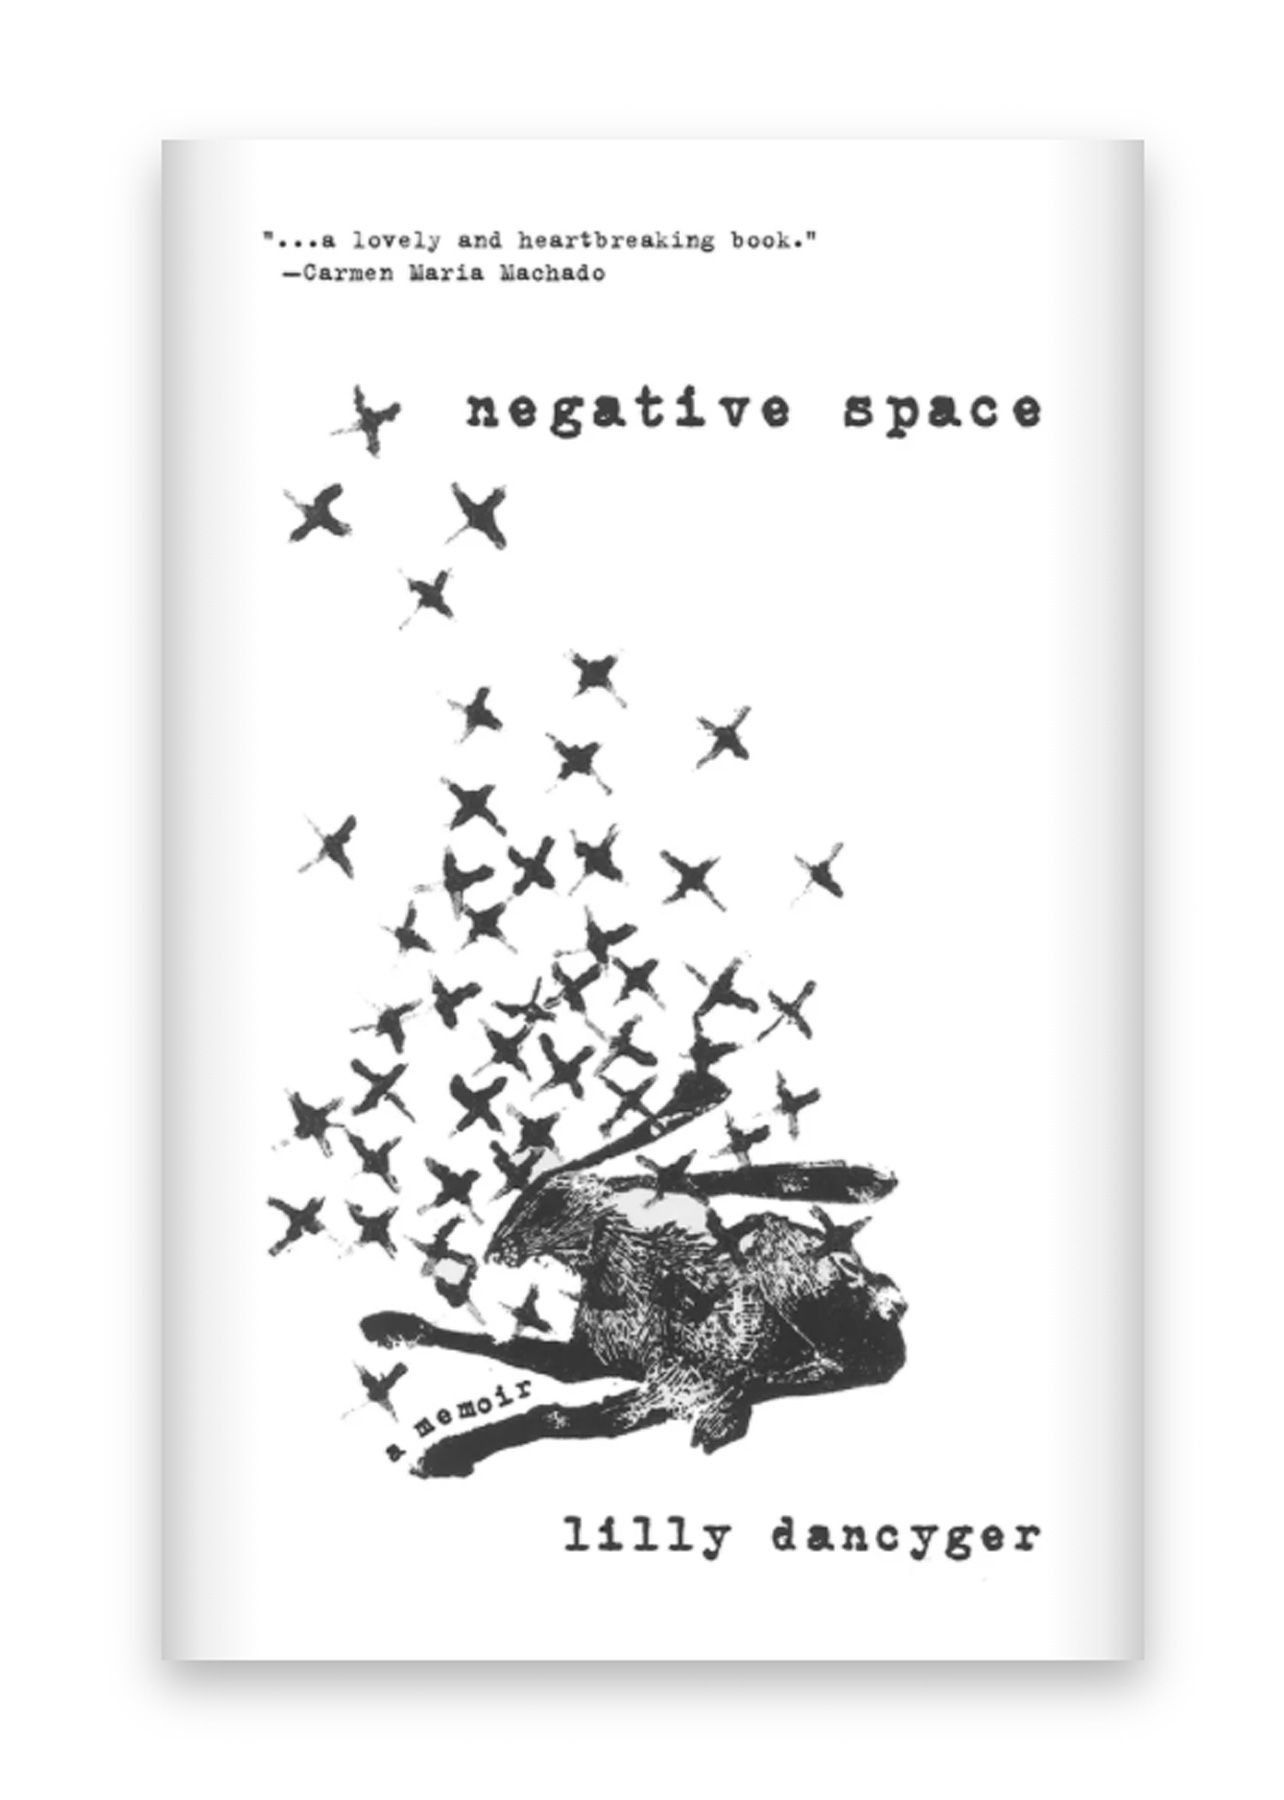 Najlepsze wiosenne książki do przeczytania 2021: Negatywna przestrzeń autorstwa Lilly Dancyger